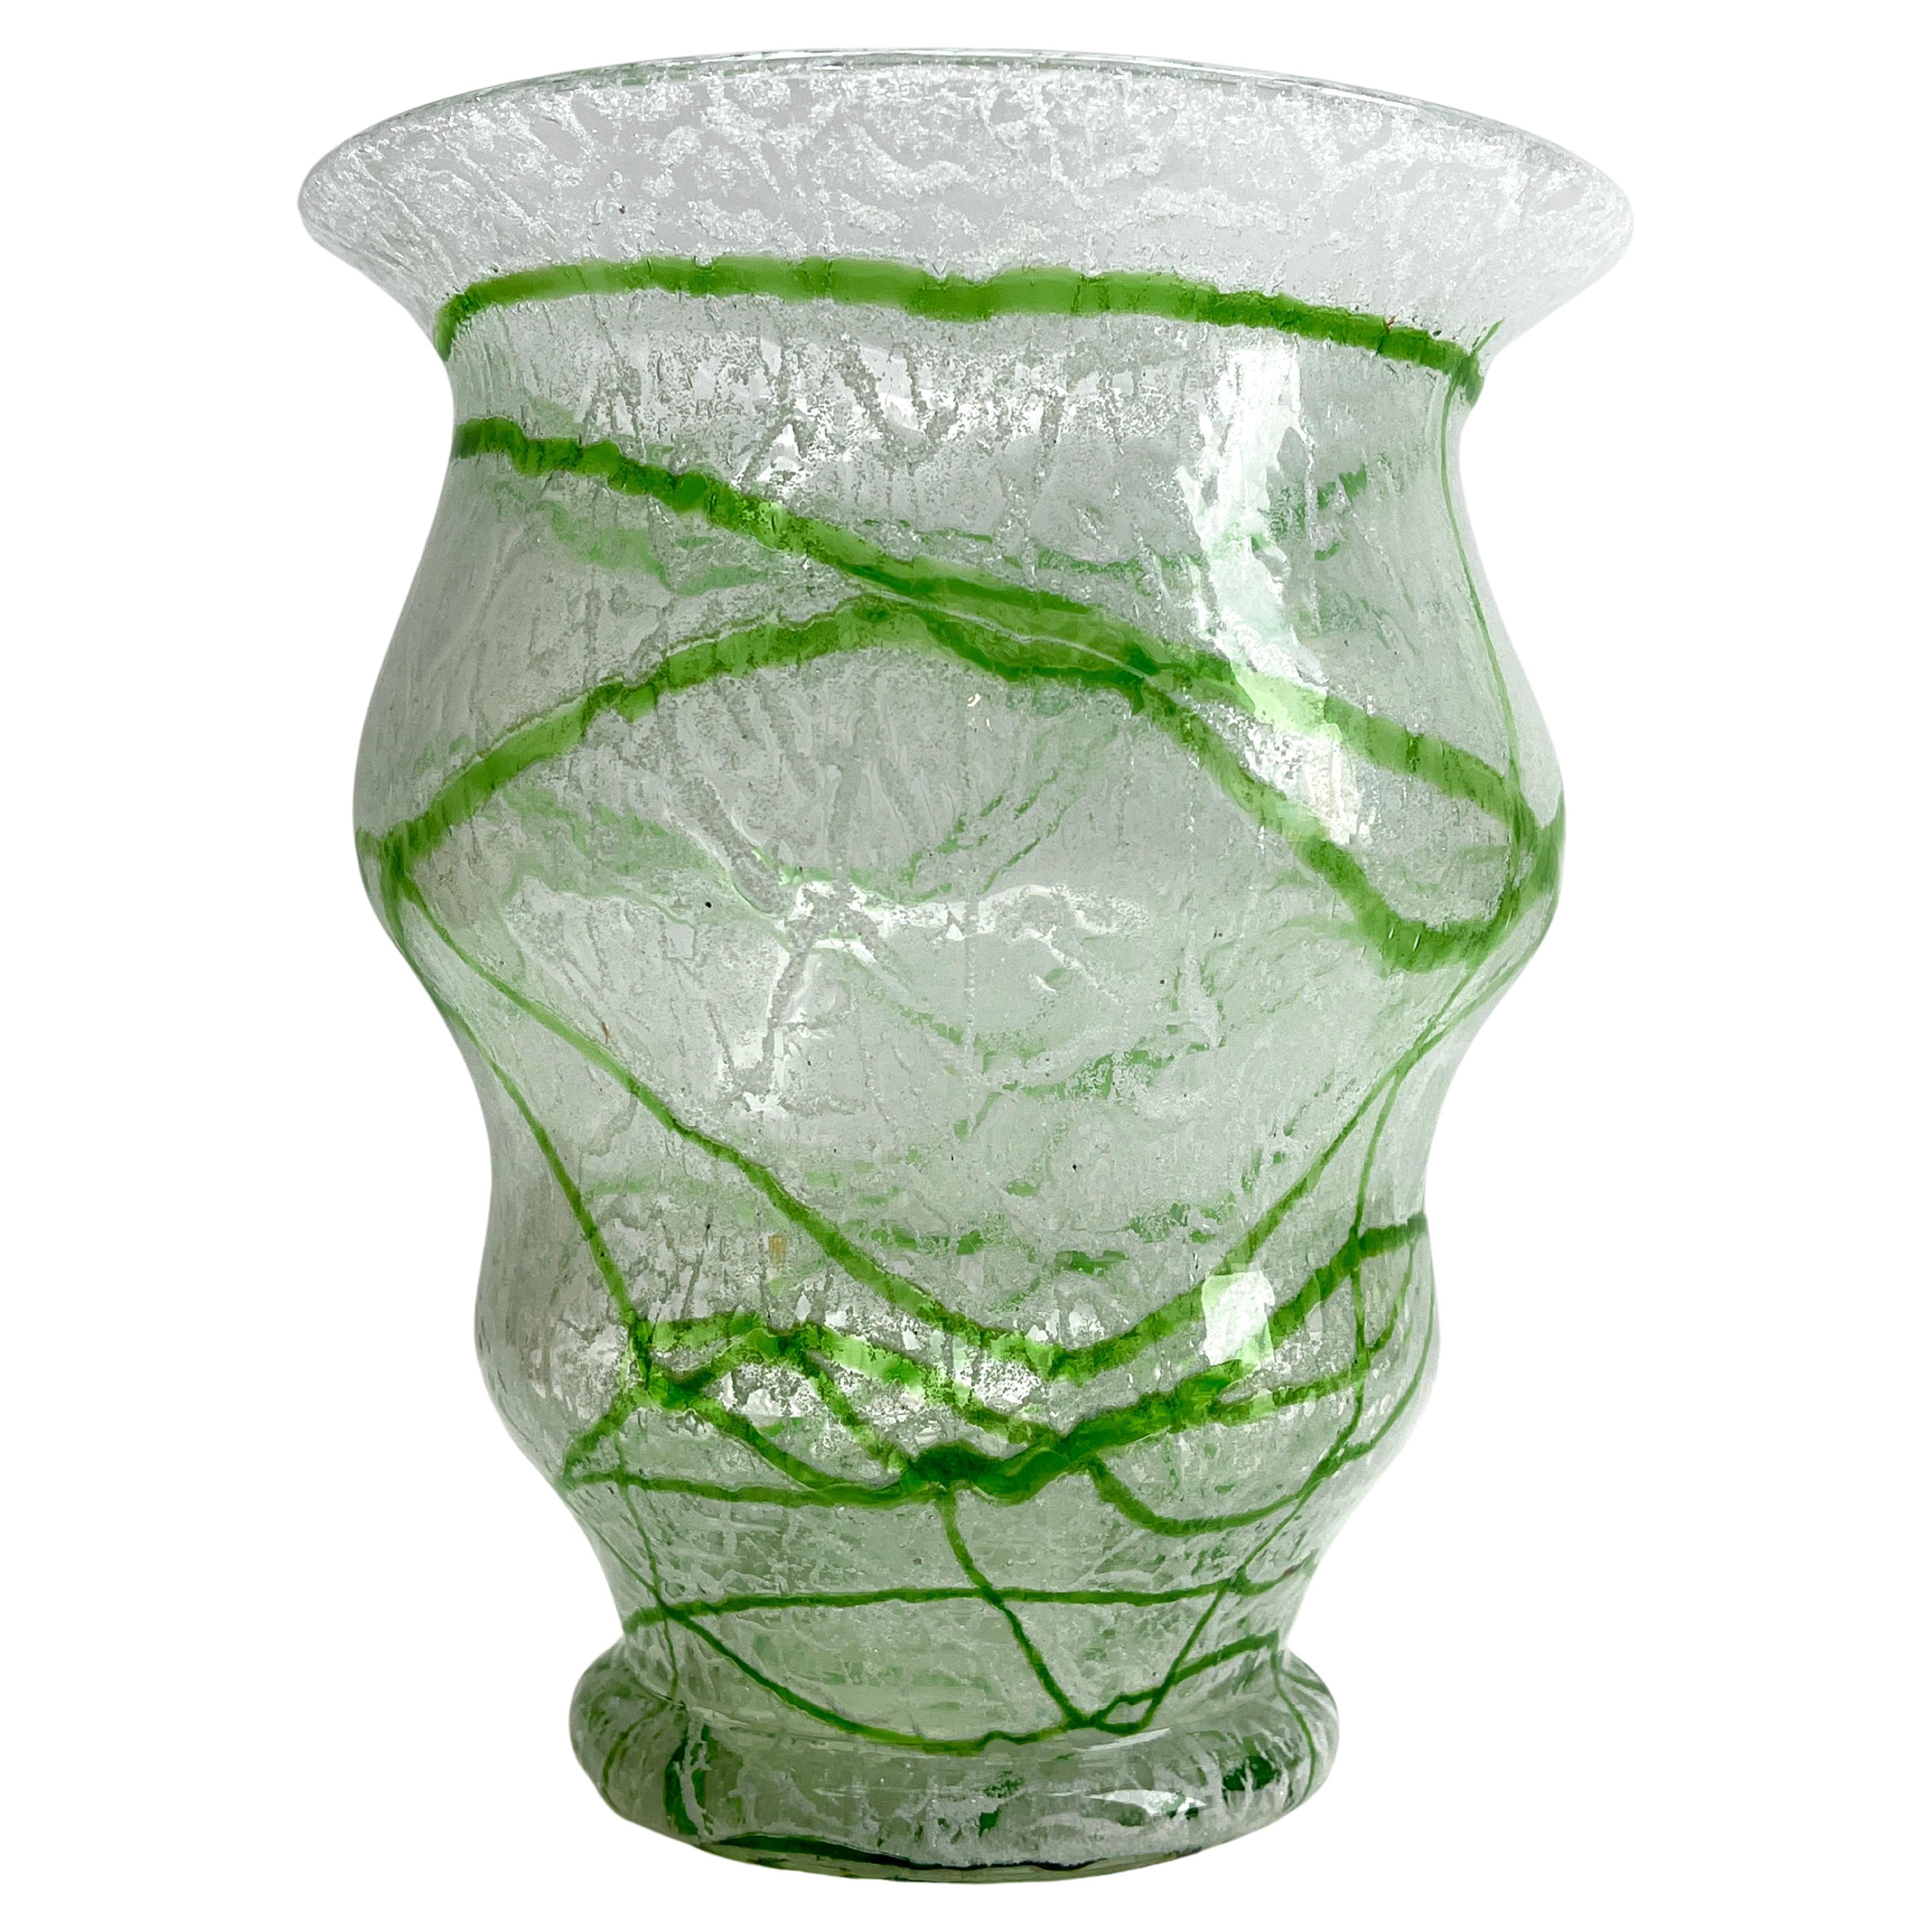 Vasen aus Schaumglas. Loetz. Johann Loetz Witwe, Klostermühle, etwa 1930er Jahre. 
Farbloses Glas mit Sodaeinschmelzungen in der Zwischenschicht, mit eingerolltem Fadennetz aus grünem Opalglas.

Loetz Jugendstil-Vase
Selten zu finden mit